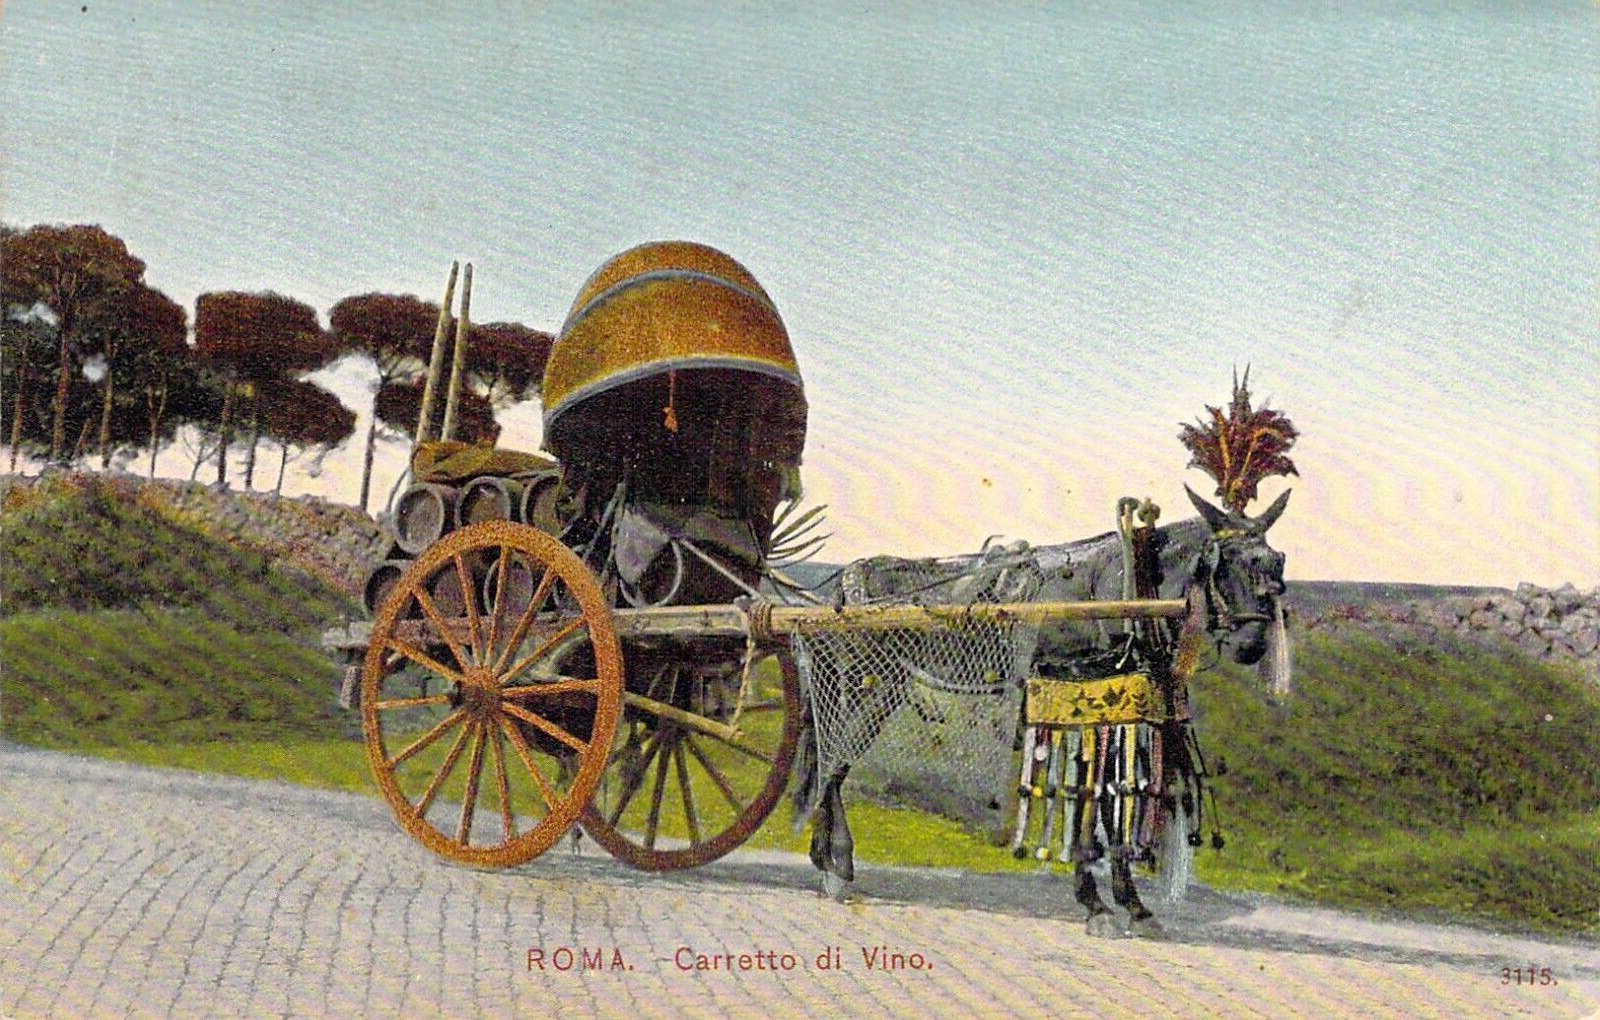 Roma Rome, Italy. Carretto di Vino (Wine). Postcard. Horse Drawn 2 Wheel Cart